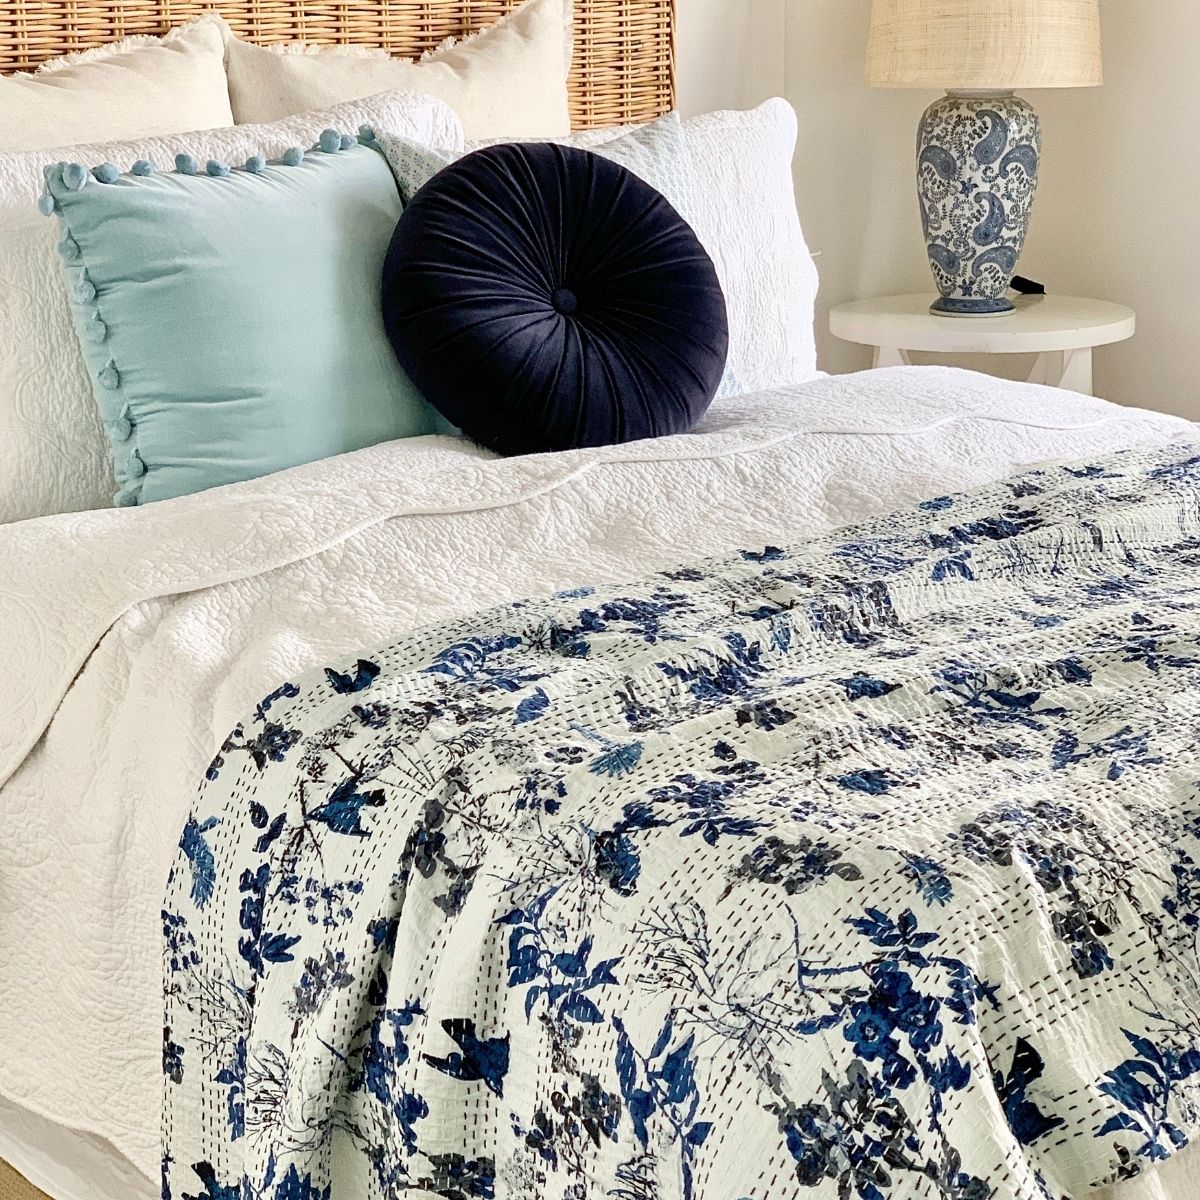 The Blue Bird Kantha quilt /bedspread-King/queen